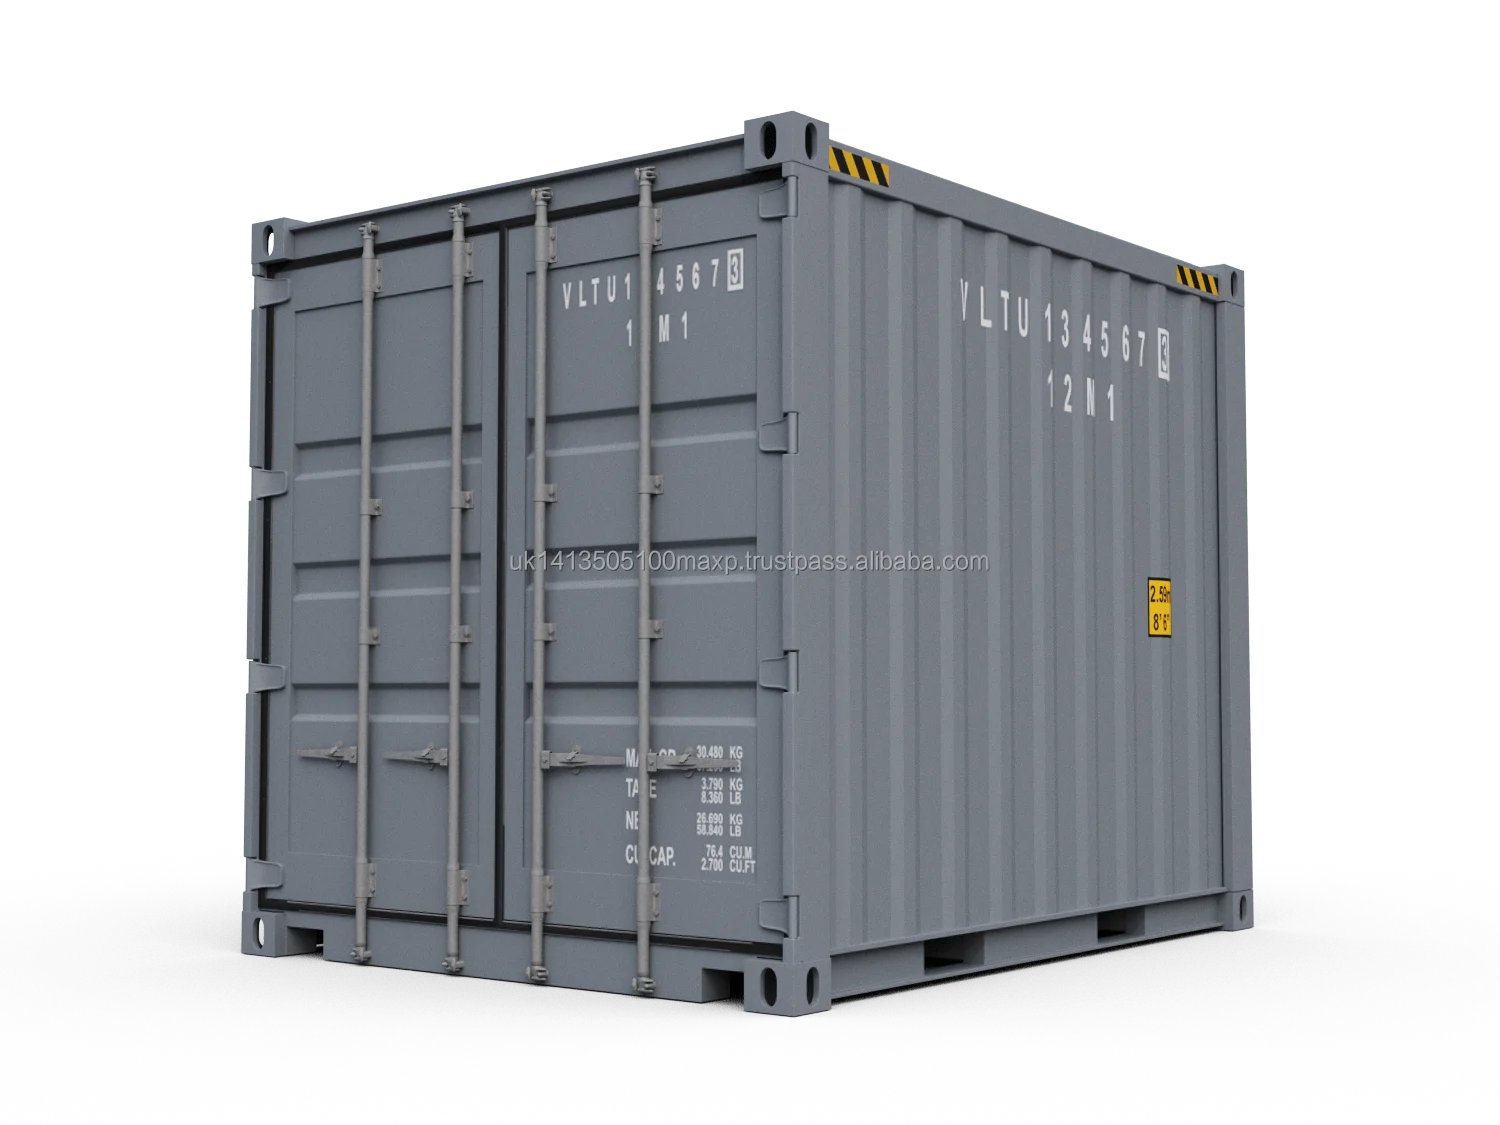 10 Ft контейнер. 40 Dry van контейнер. Контейнер 10 футов CIMC. Контейнер ИСО 40 изотермический.